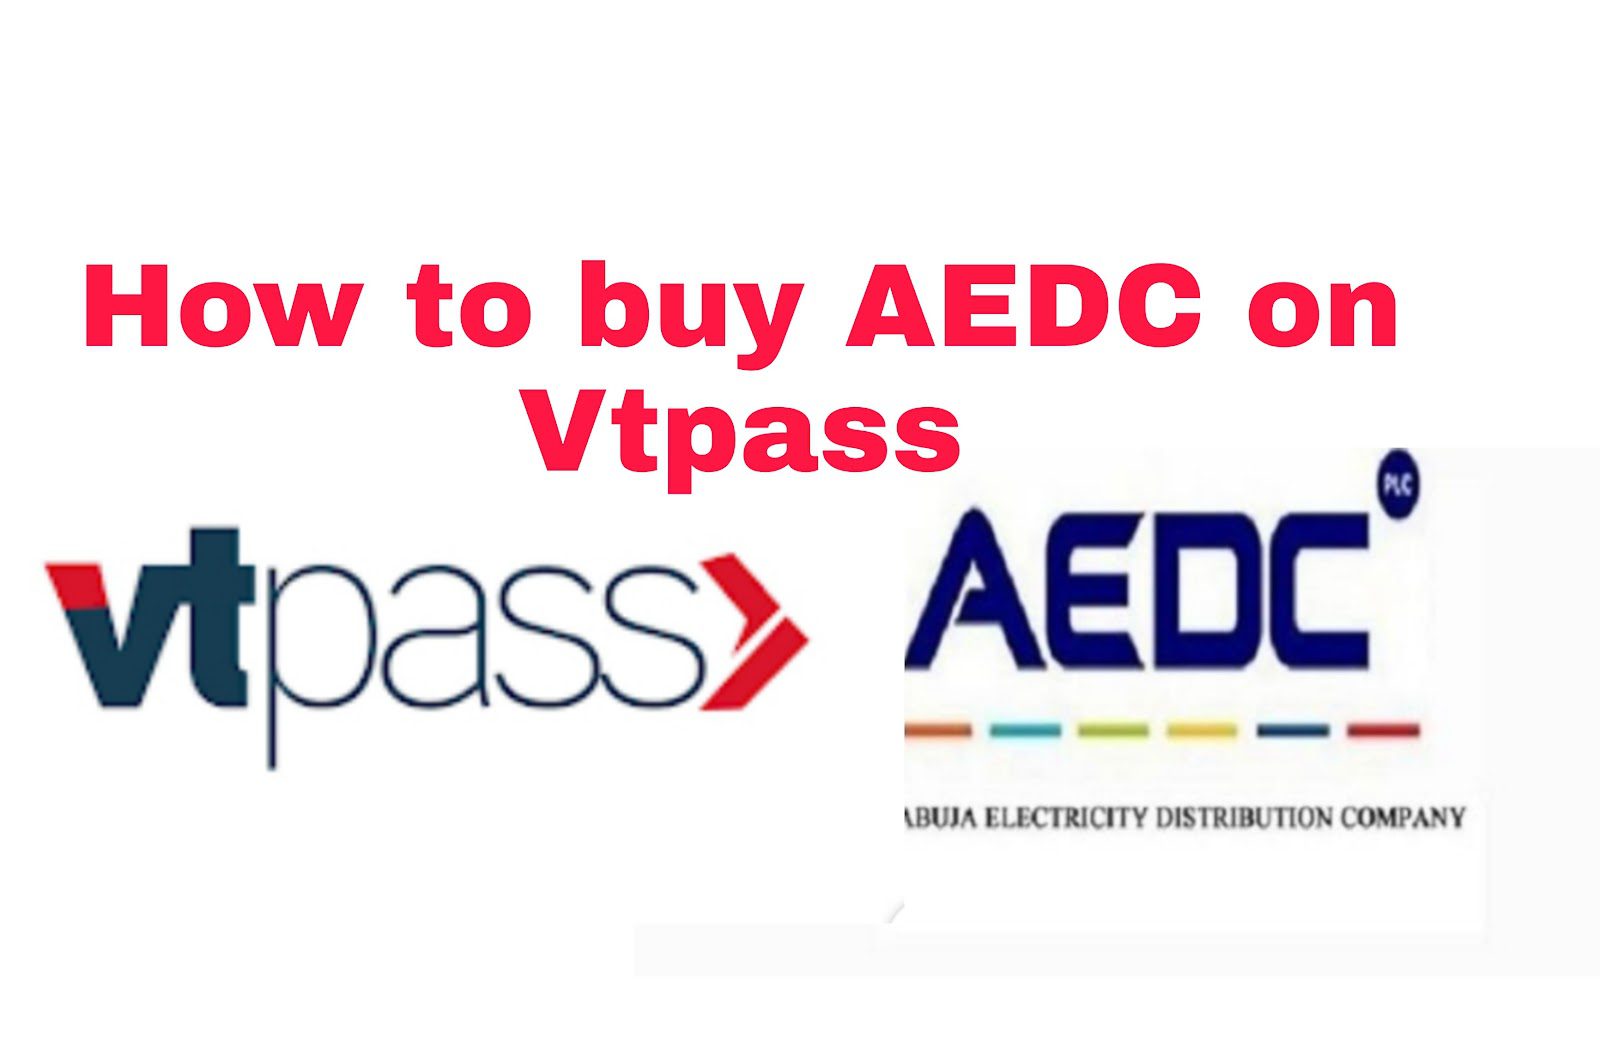 AEDC vtpass